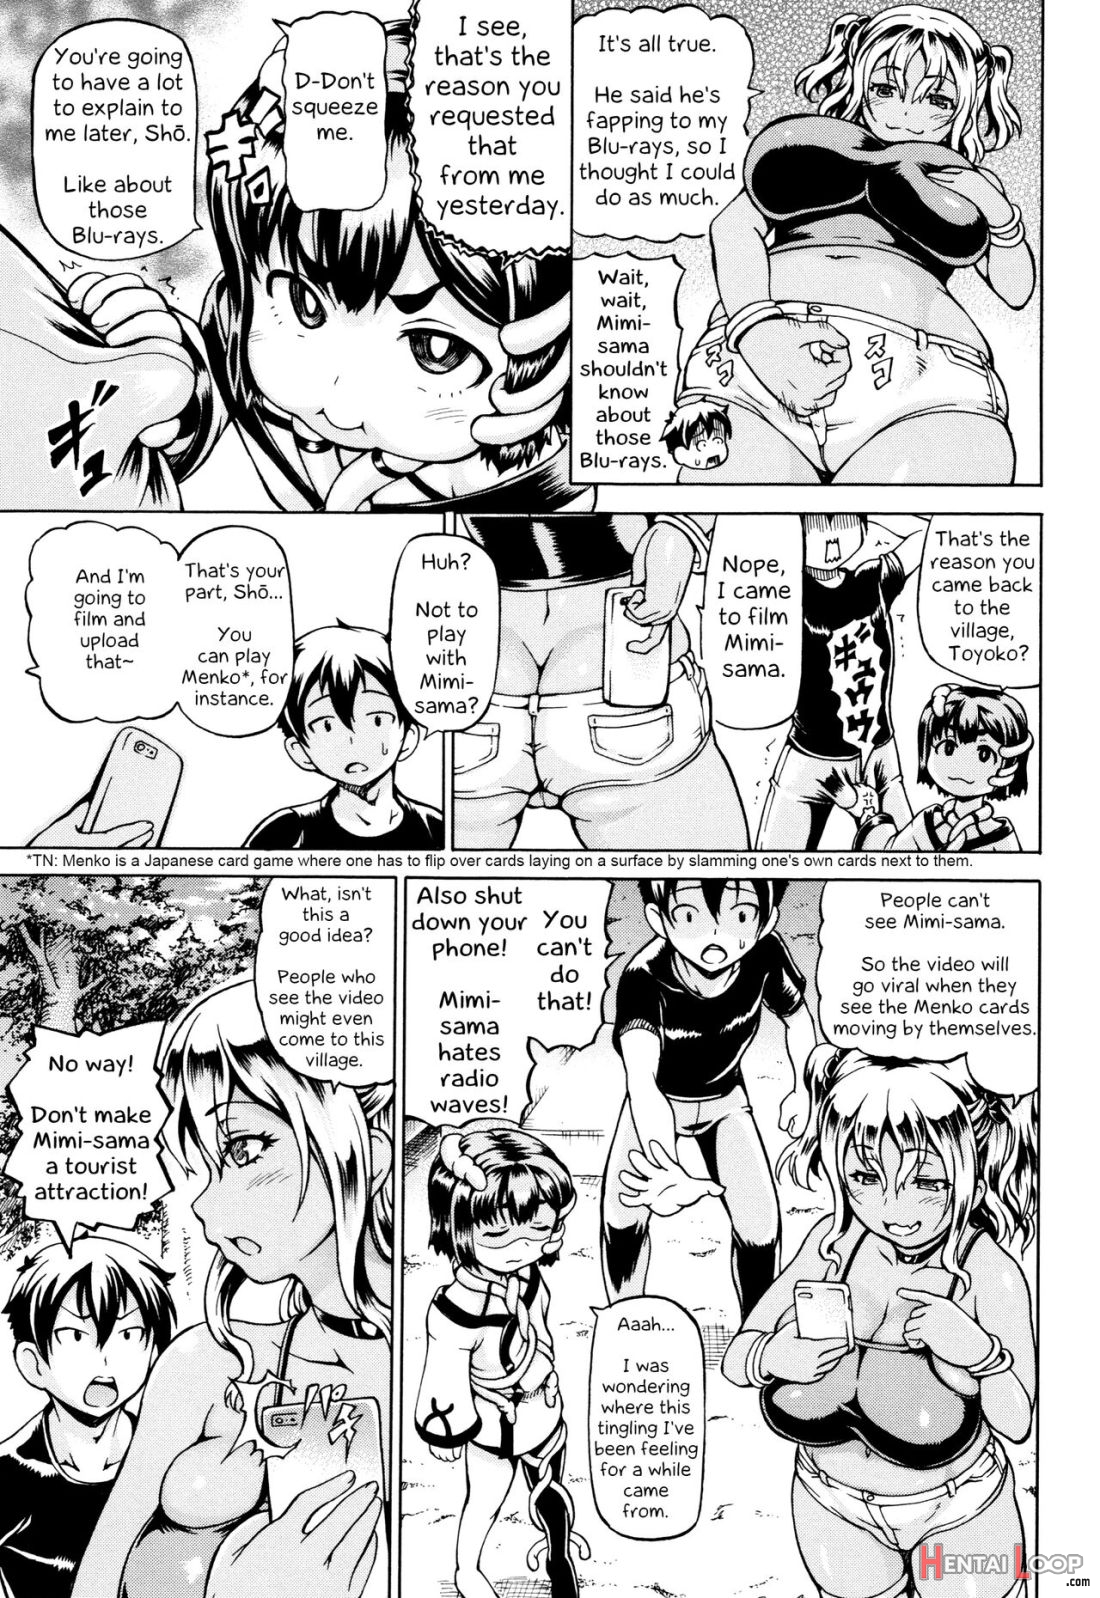 Mimi-sama Okkiku Shite! page 51